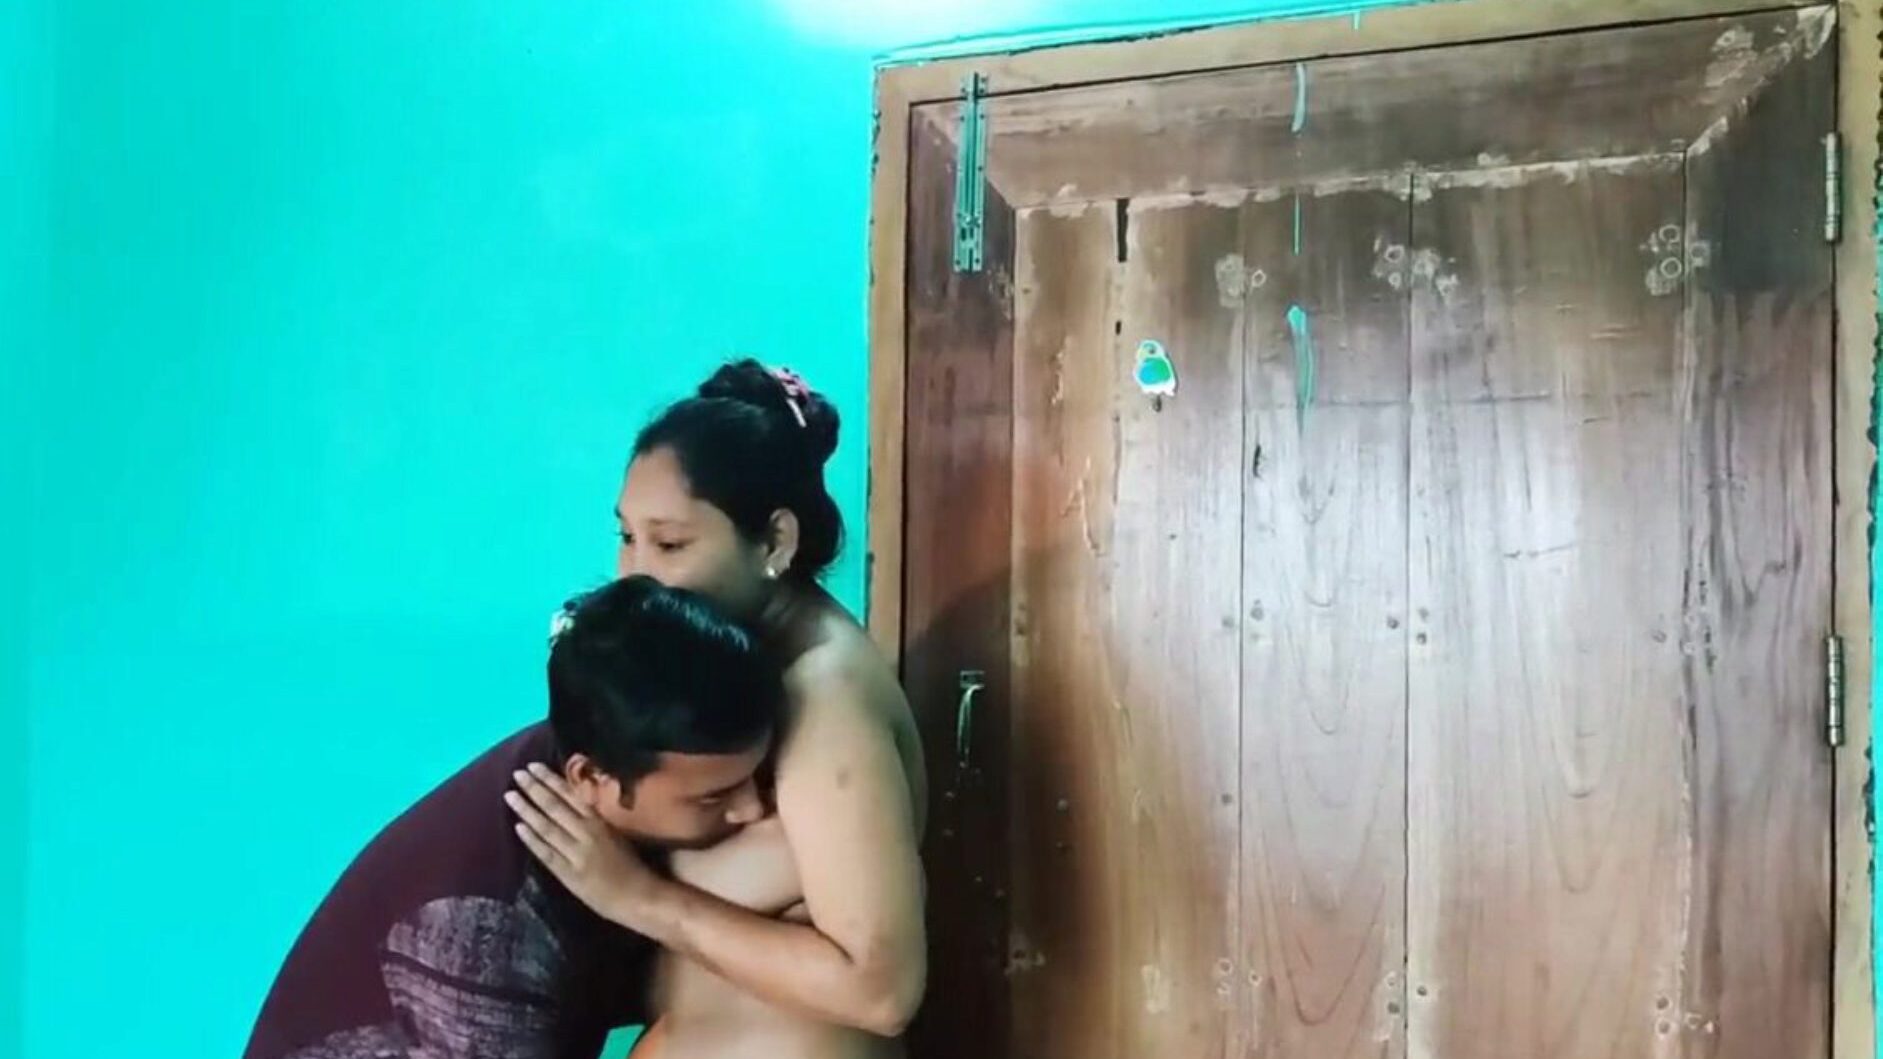 vídeo de sexo desi bengali nu, pornografia asiática grátis 6c: xhamster assista ao vídeo de sexo desi bengali nu episódio no xhamster, o mais gordo tubo hd foda-fest de recursos da web com toneladas de vídeos de sexo xxn asiático e pornografia anal grátis para todos